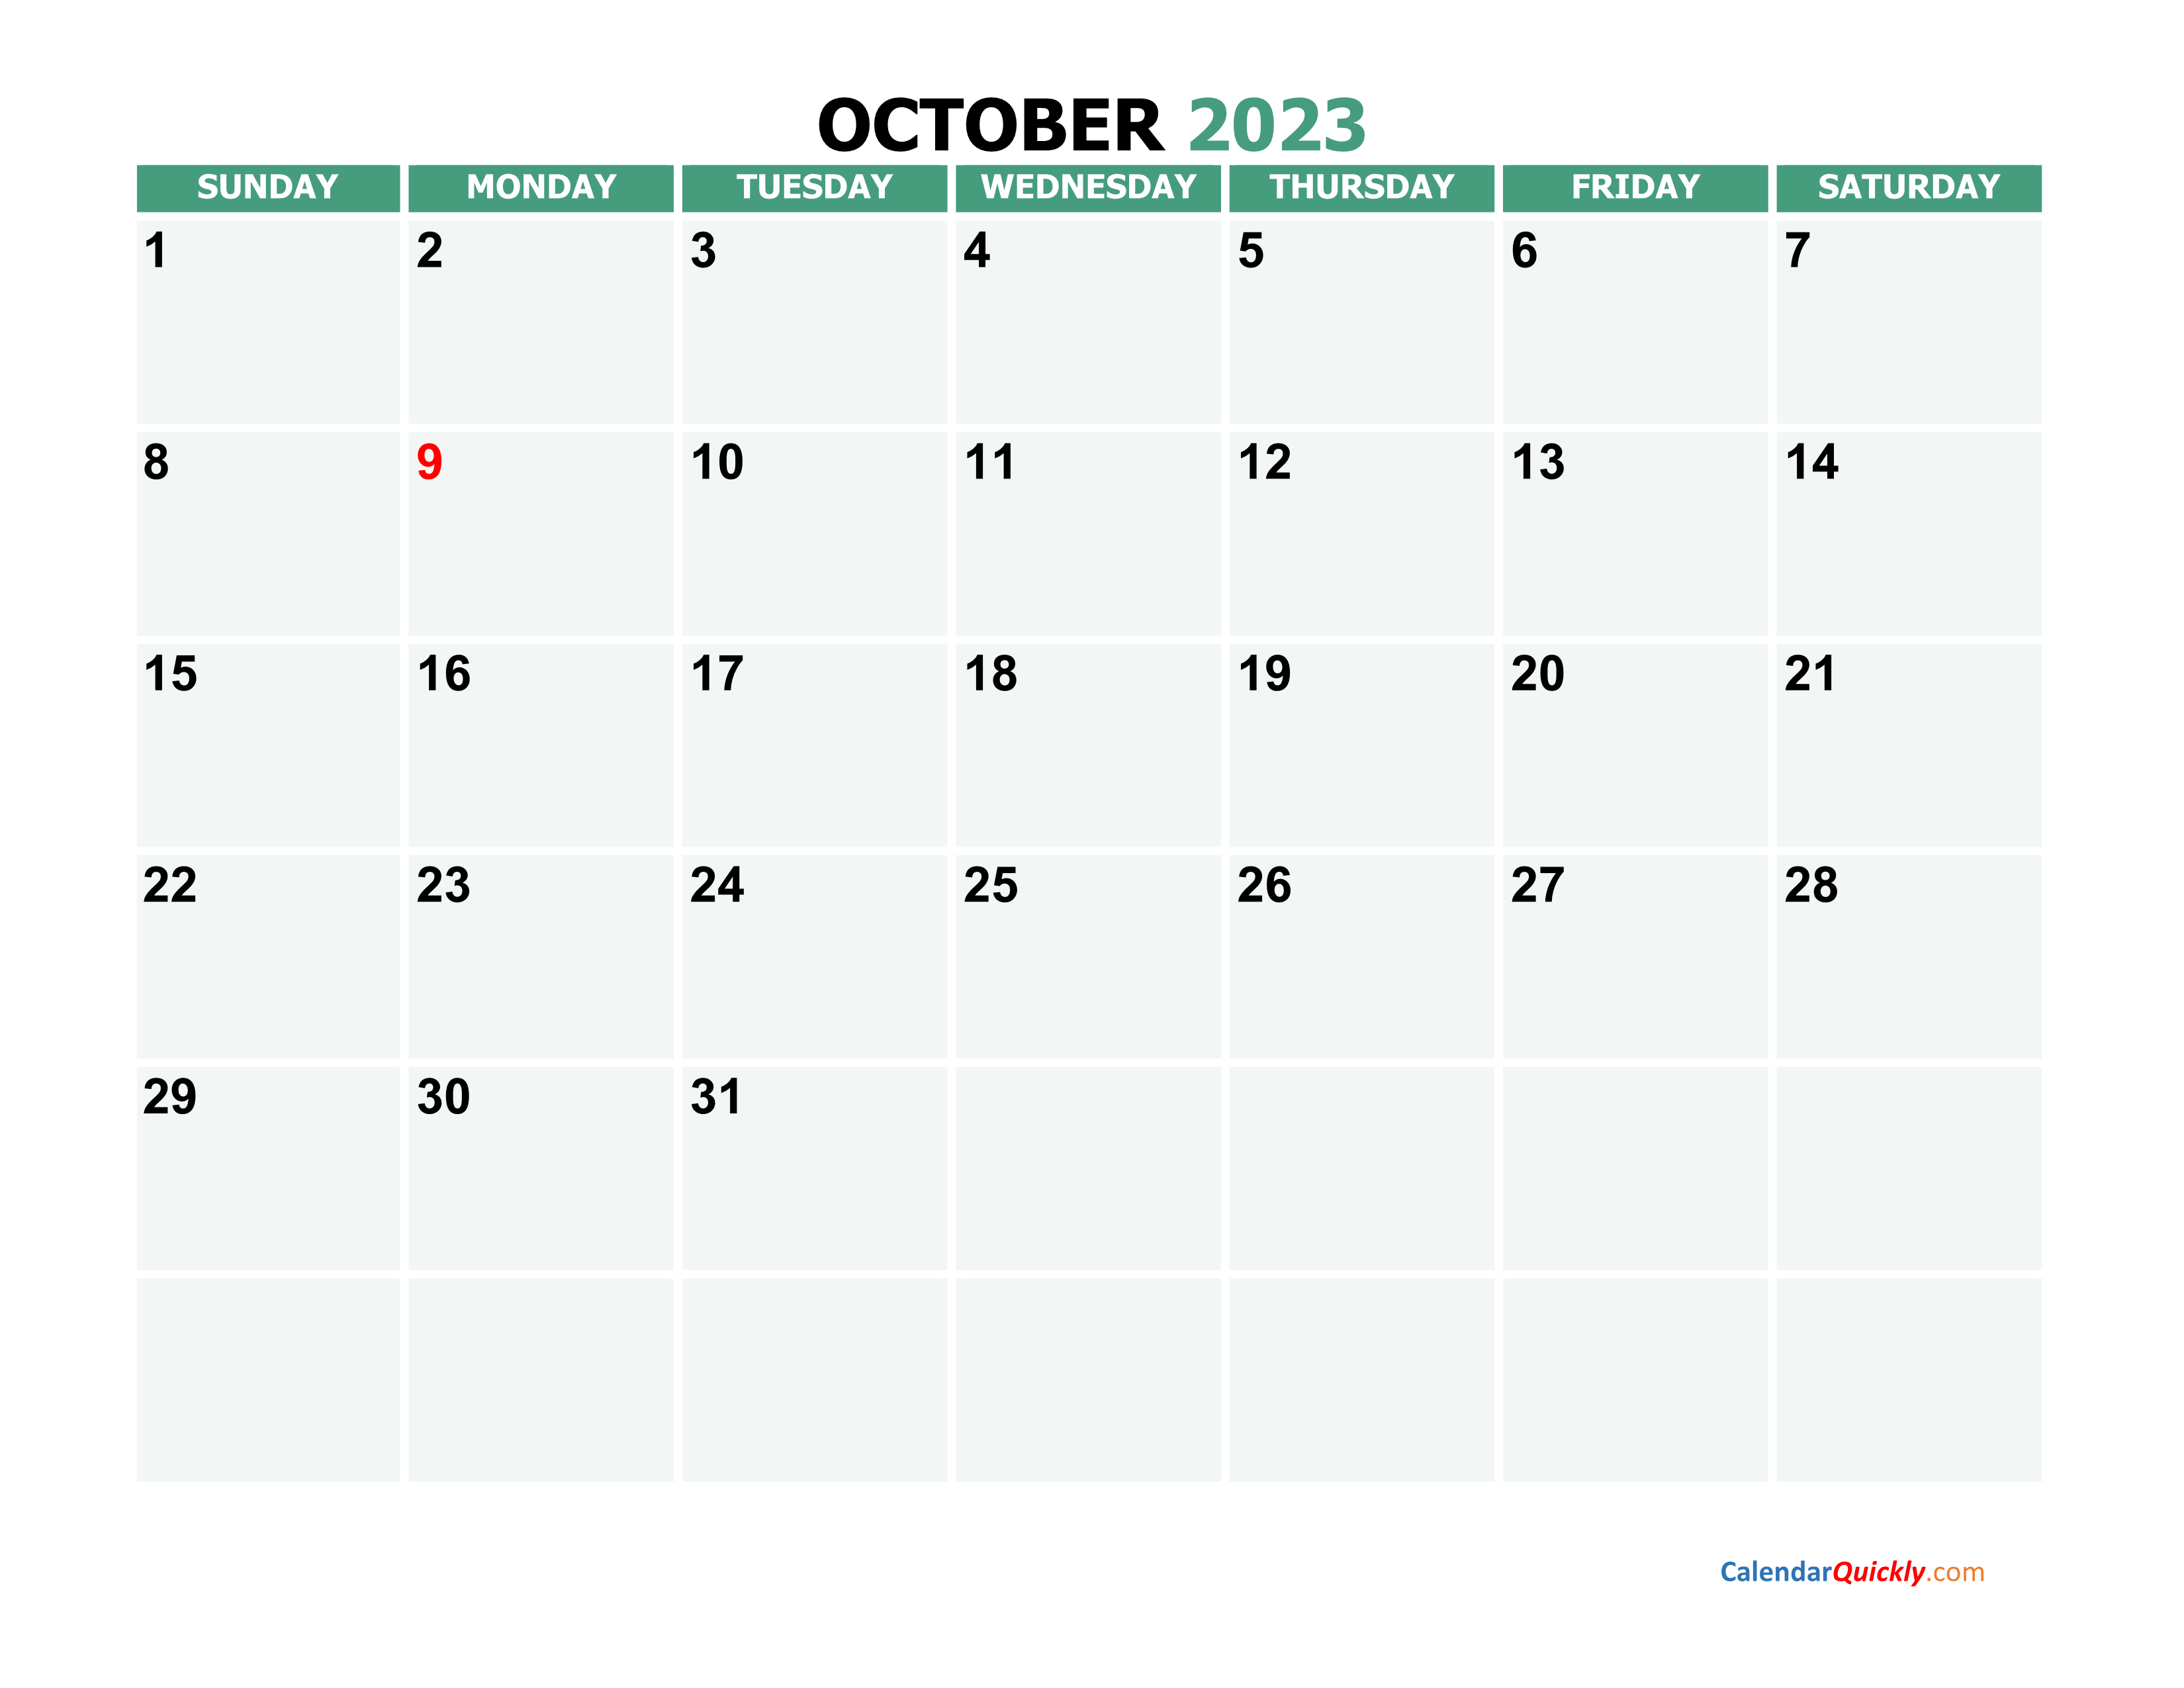 October 2023 Calendars | Calendar Quickly